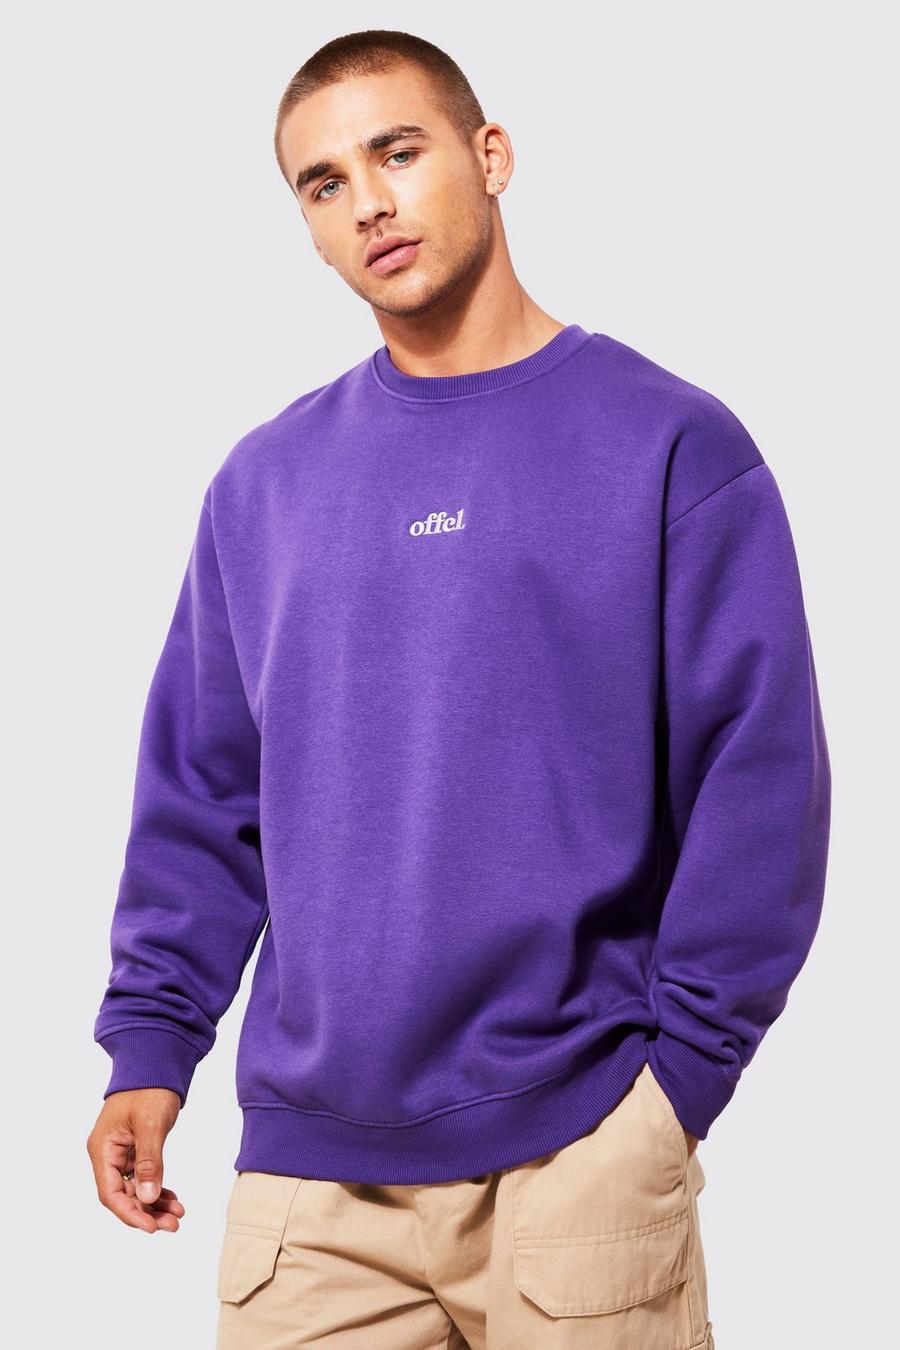 Purple Oversized Offcl Crew Neck Sweatshirt image number 1